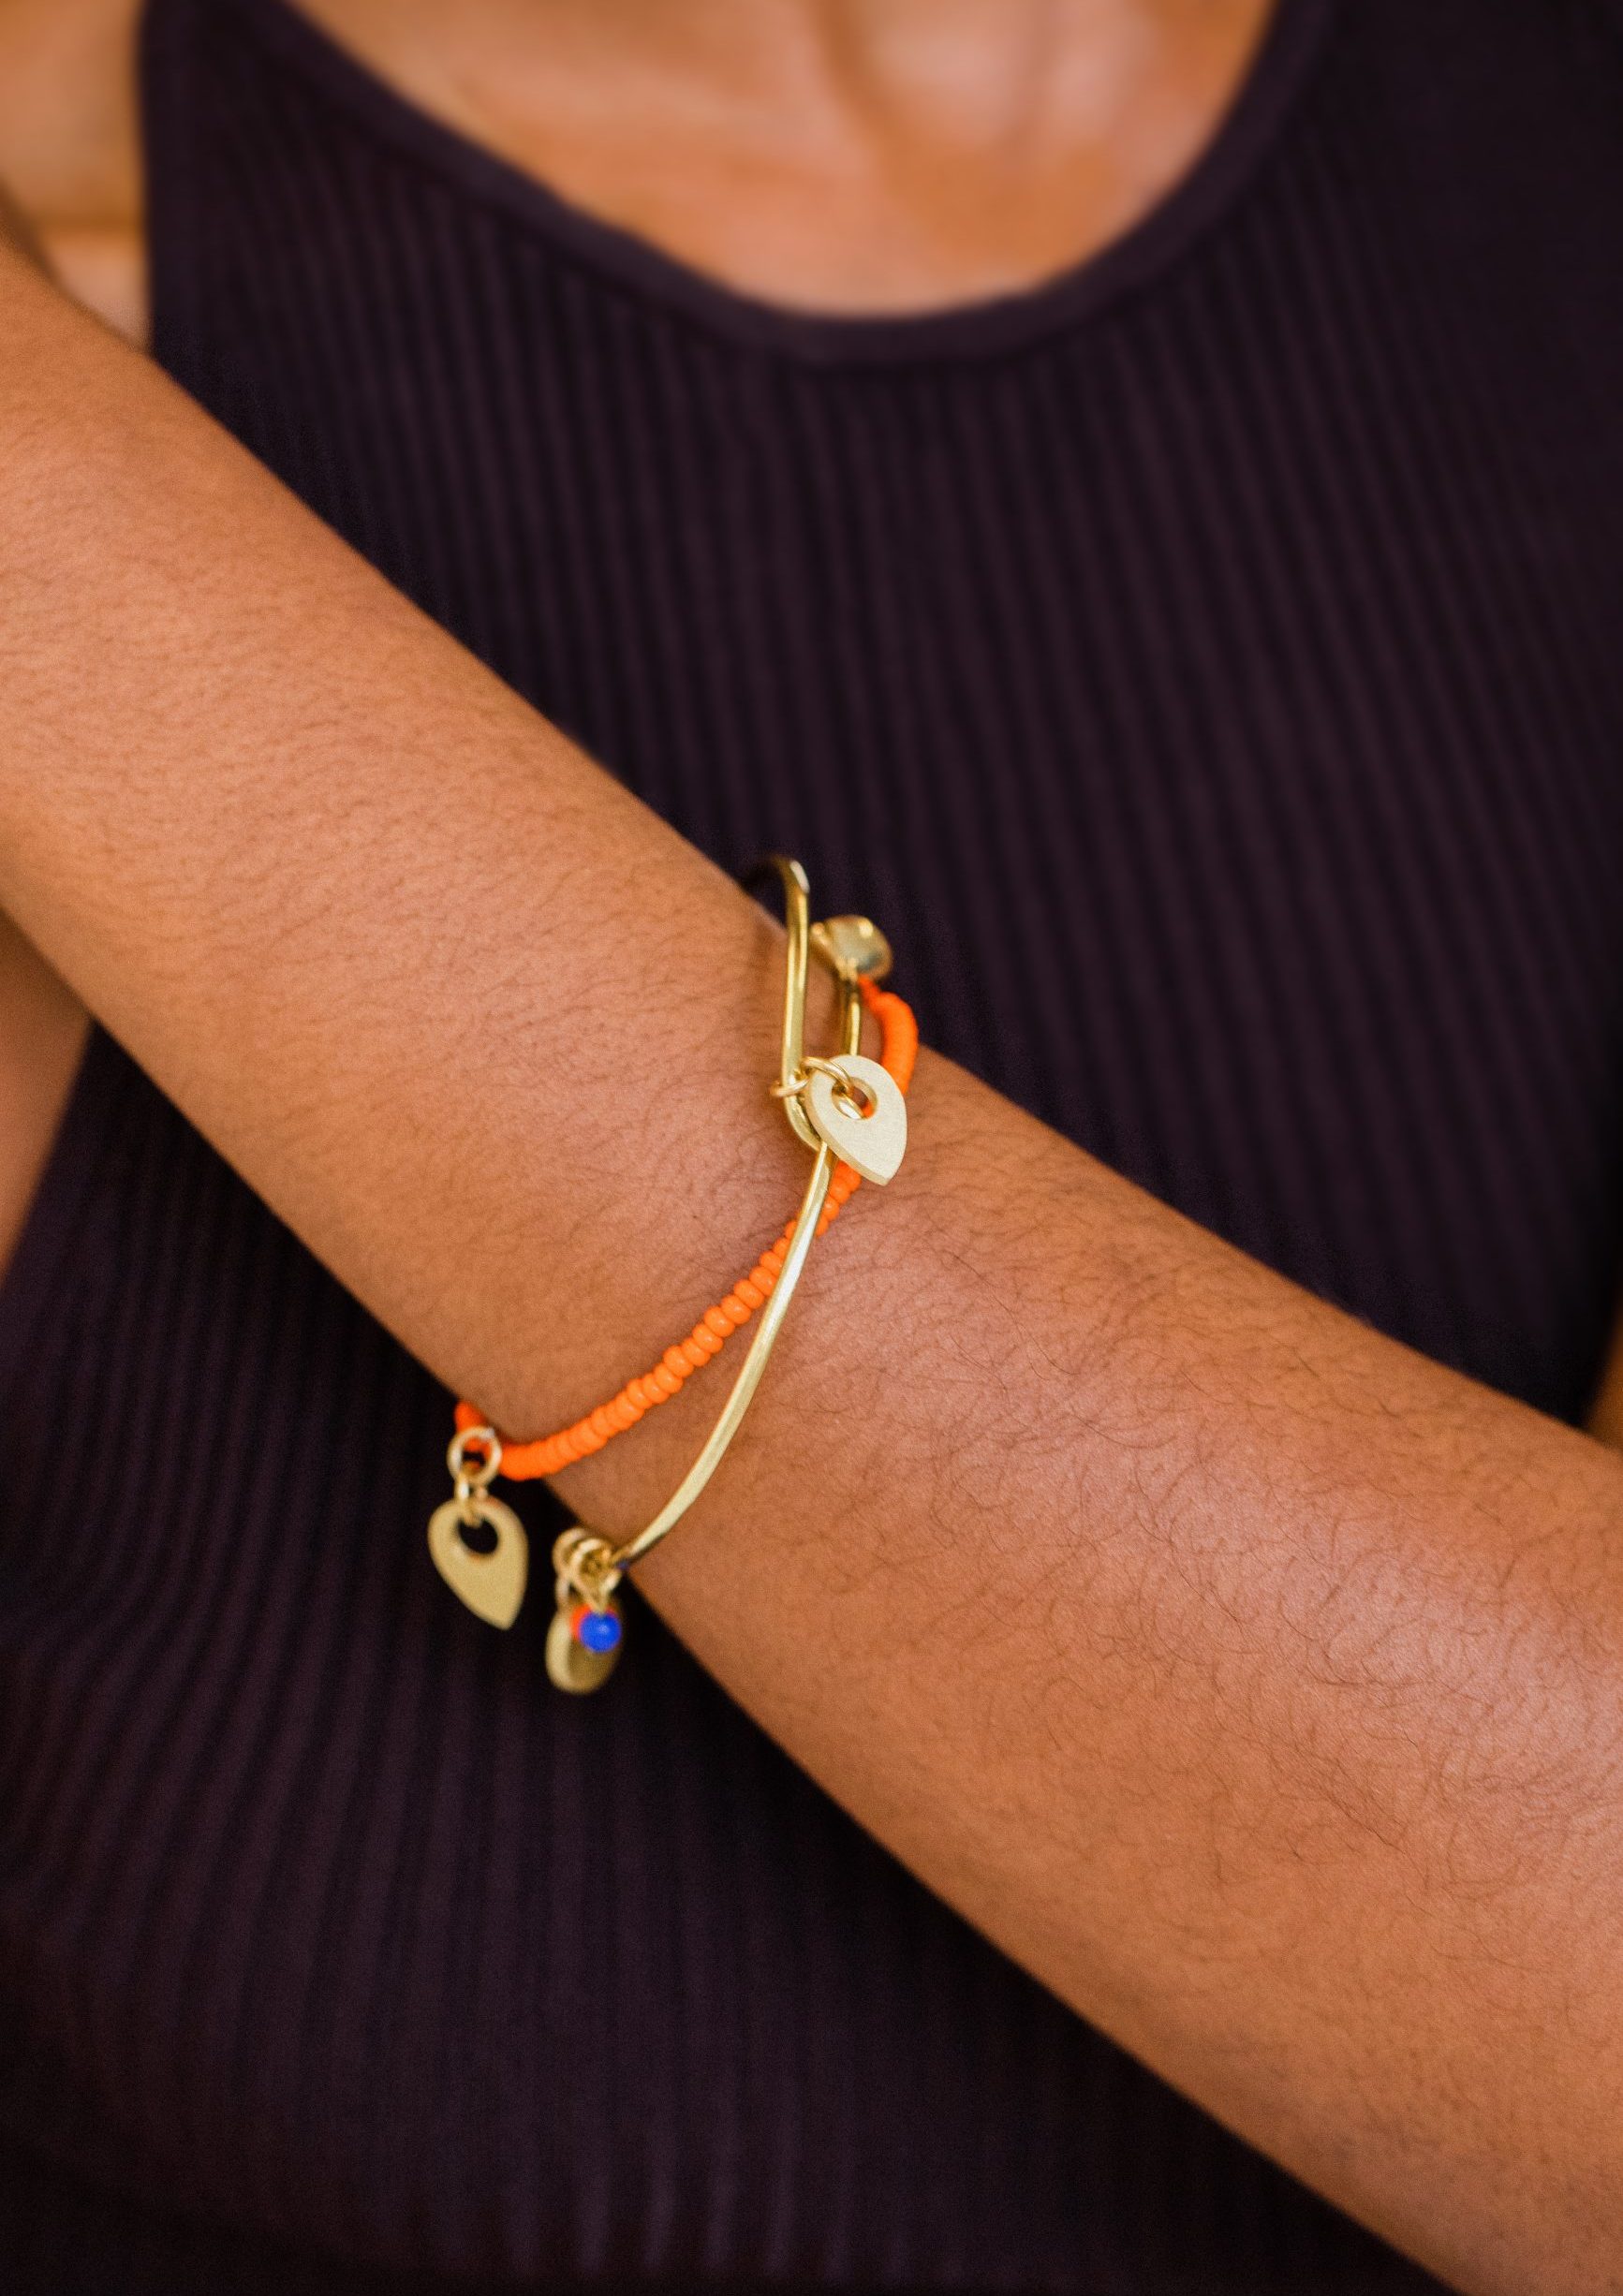 Charity Armband am Arm einer Frau - Ein Zeichen gegen Gewalt an Frauen Video - UN Women Deutschland